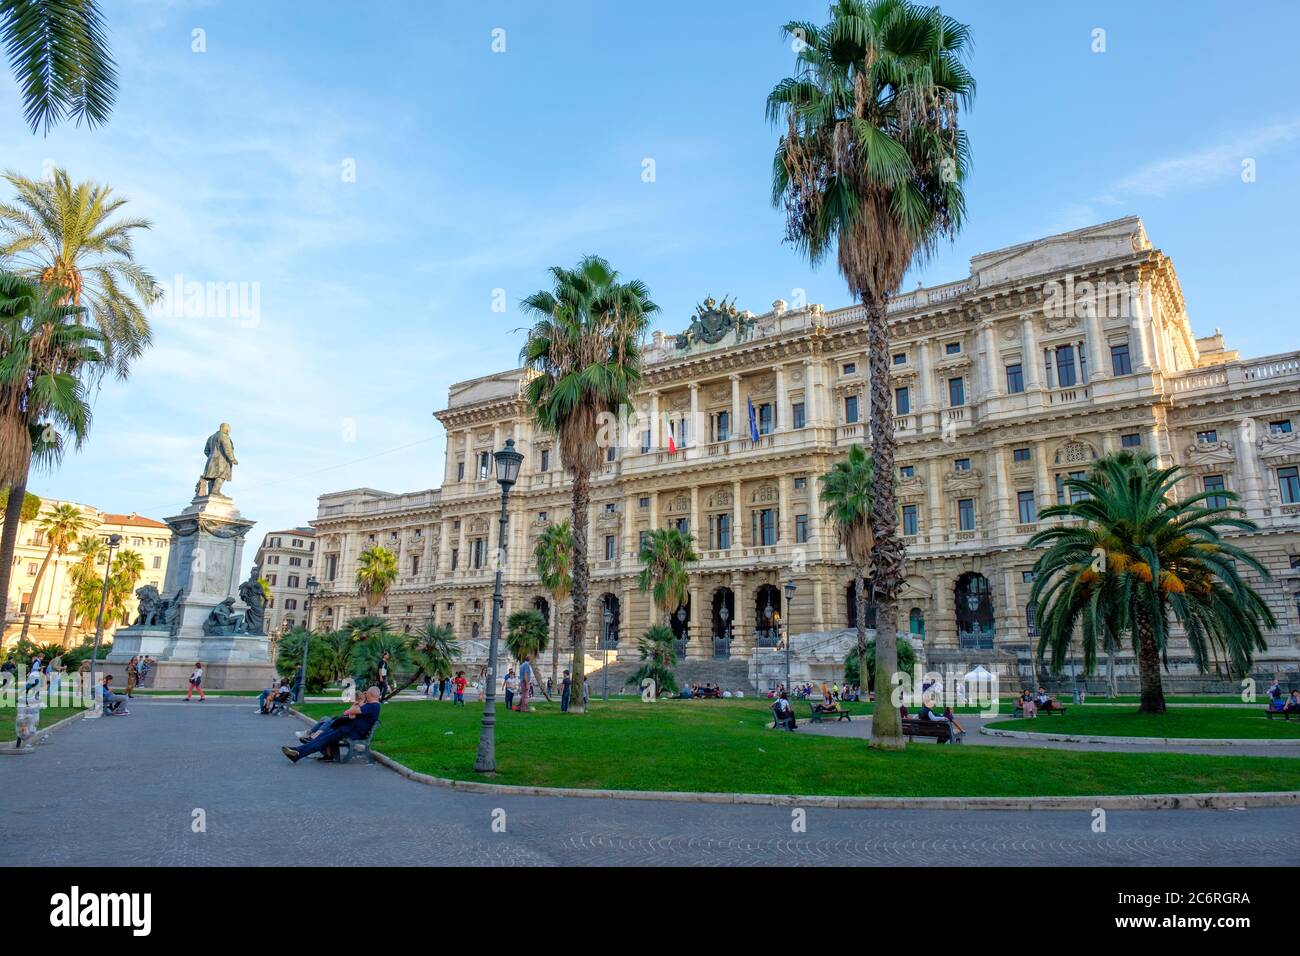 Piazza Cavour, Corte Suprema di Cassazione (Supreme Court of Cassation), Palace of Justice, Rome, Italy Stock Photo